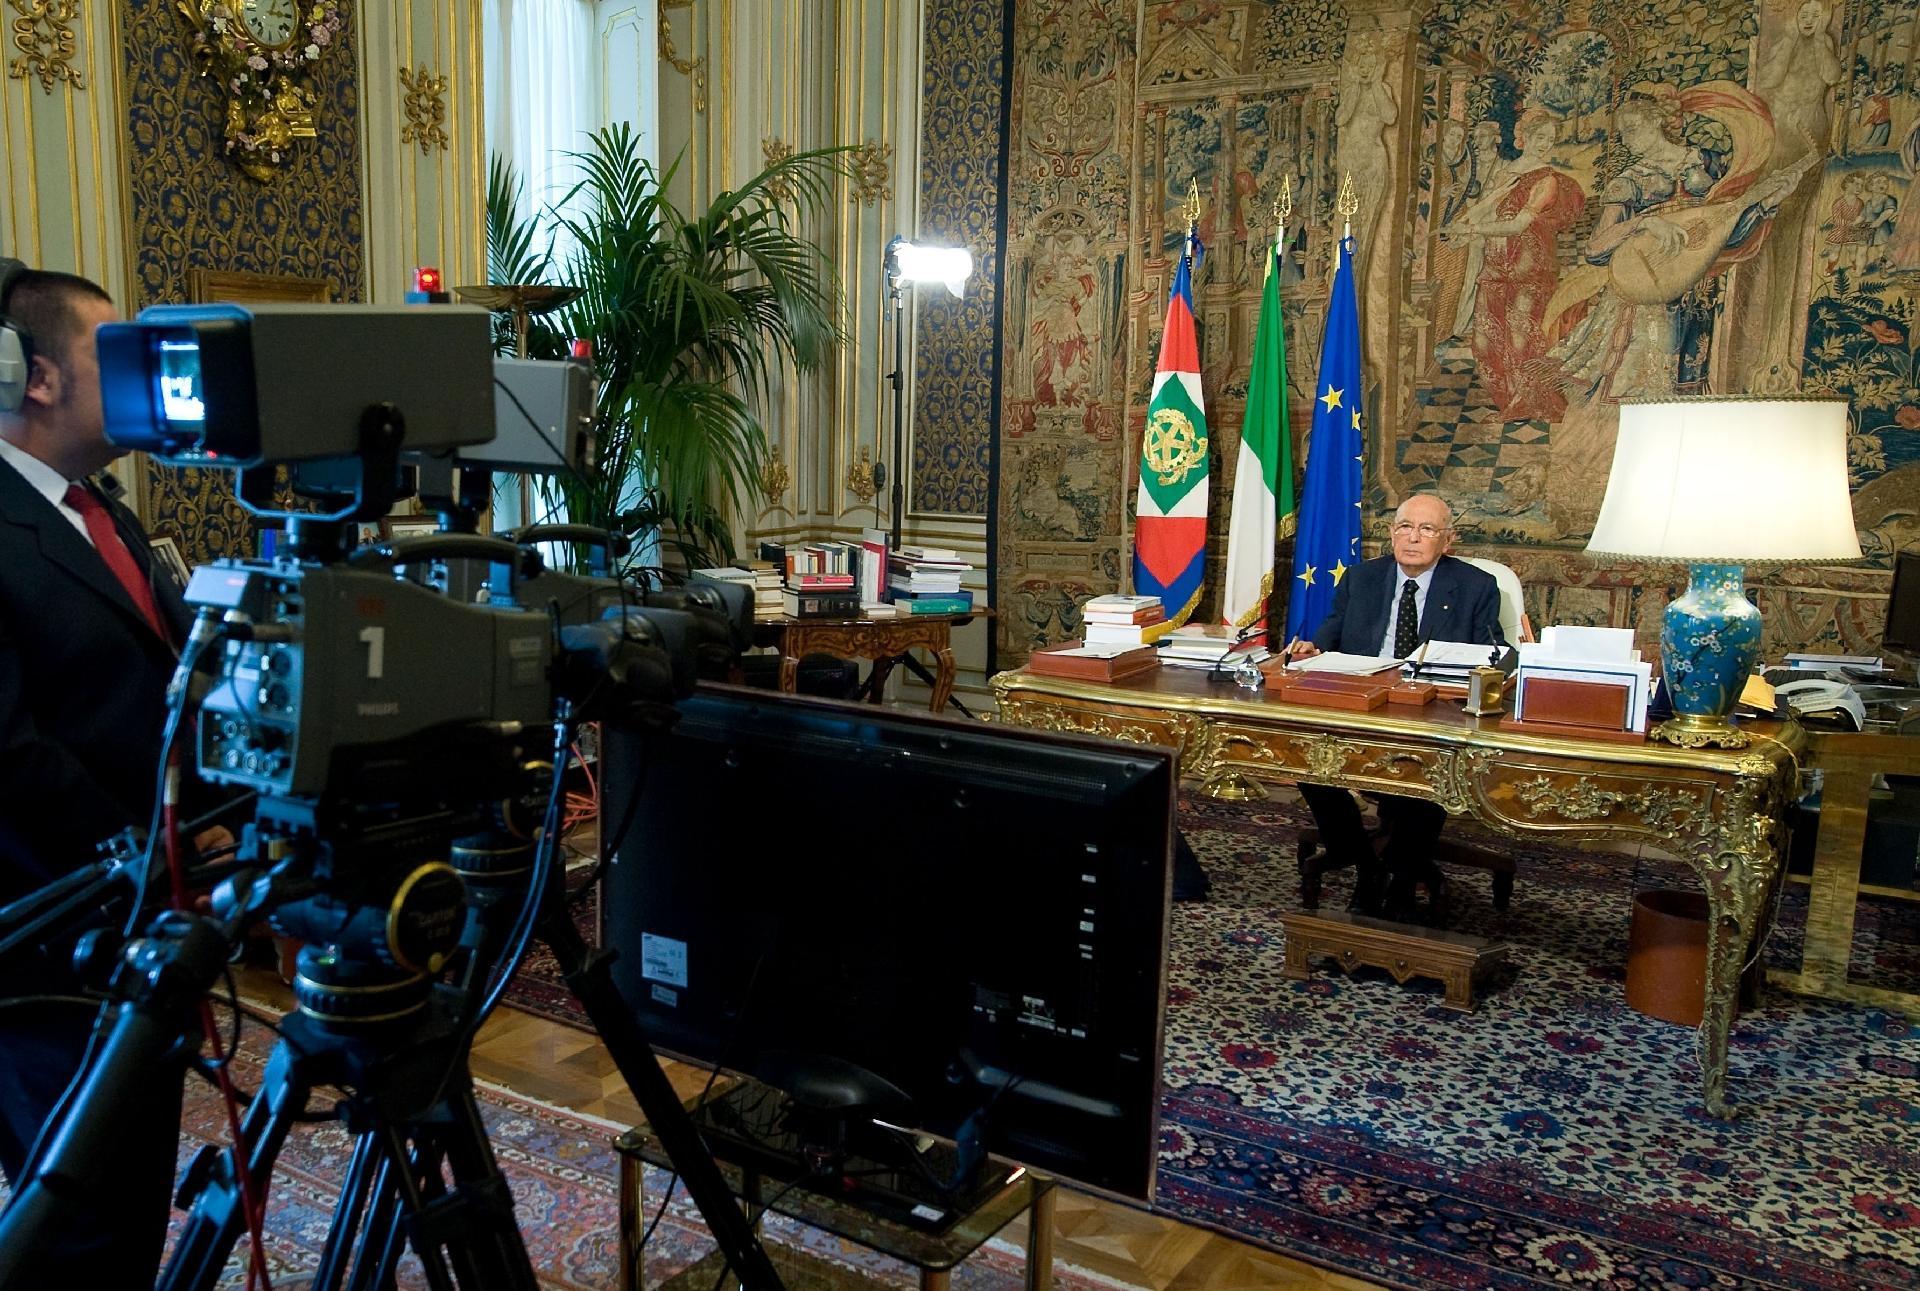 Il Presidente Giorgio Napolitano nel corso della registrazione dell'intervista rilasciata a Bruno Vespa in occasione del decimo anniversario degli attentati dell'11 settembre negli USA